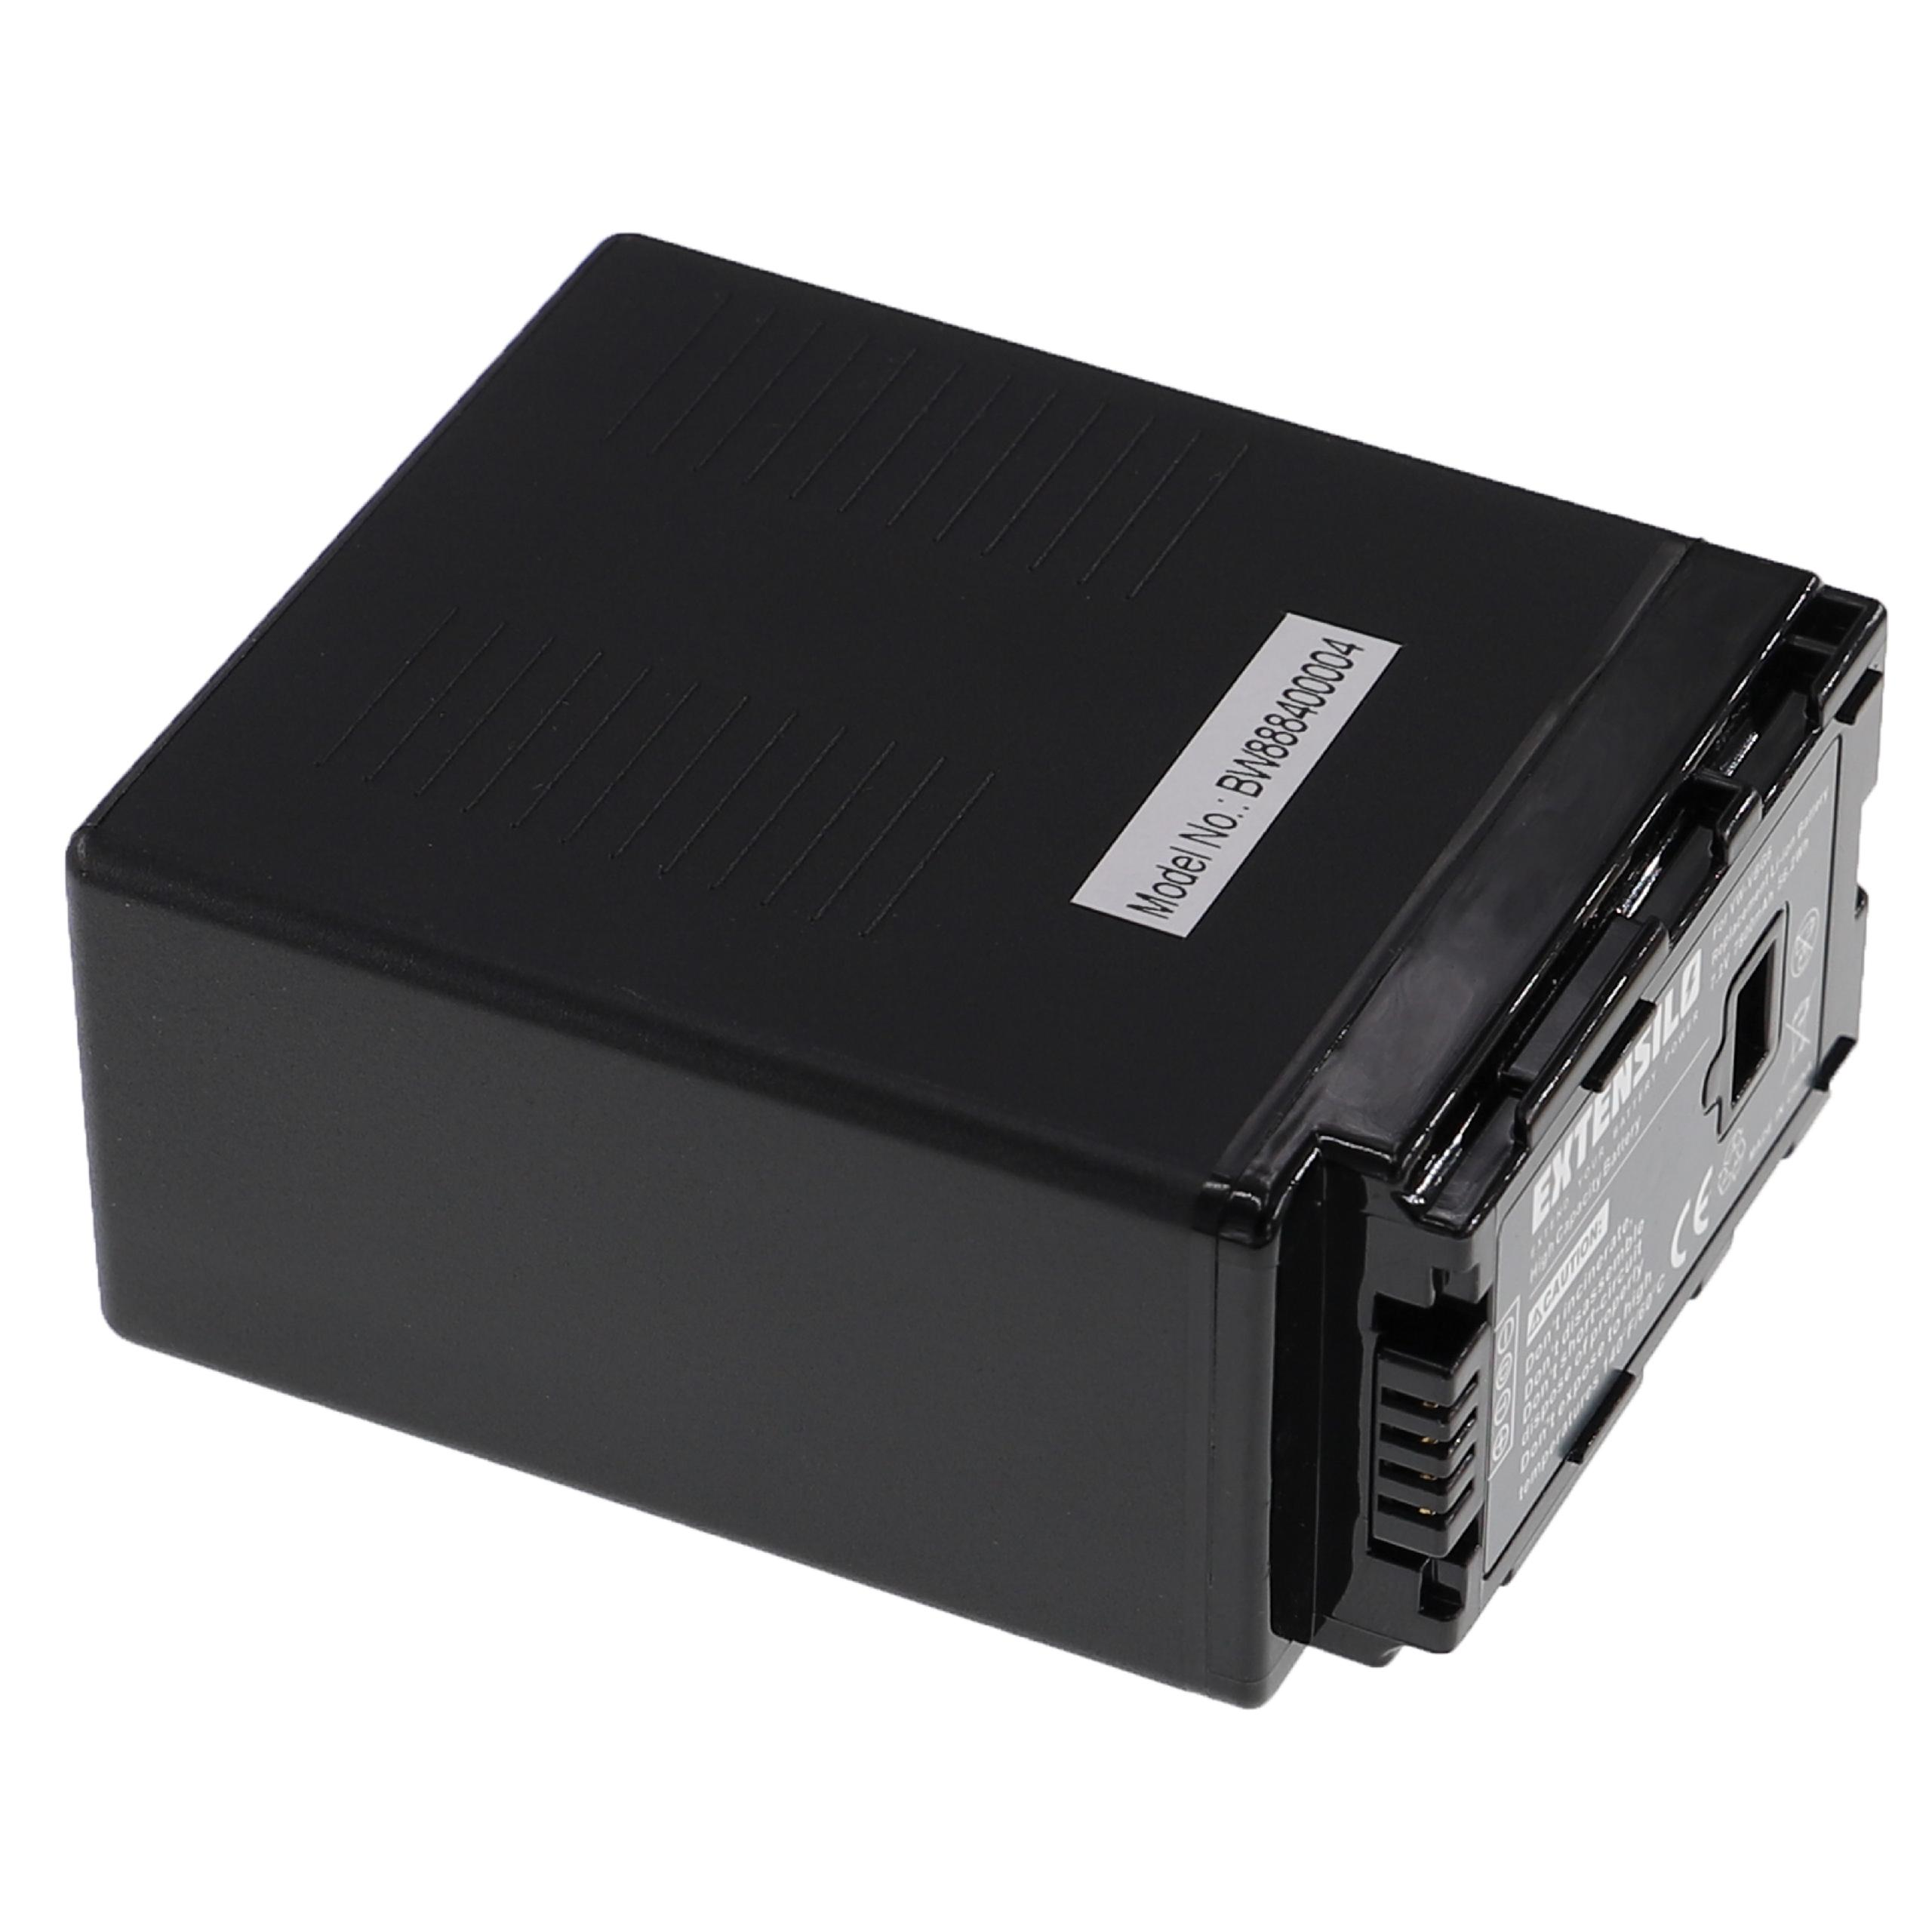 SDR-H258GK, - SDR-H50, kompatibel Panasonic mit PV-GS320, PV-GS500, SDR-H48GK Akku PV-GS90, 7.2 EXTENSILO 7800 Volt, Kamera, SDR-H40, Li-Ion